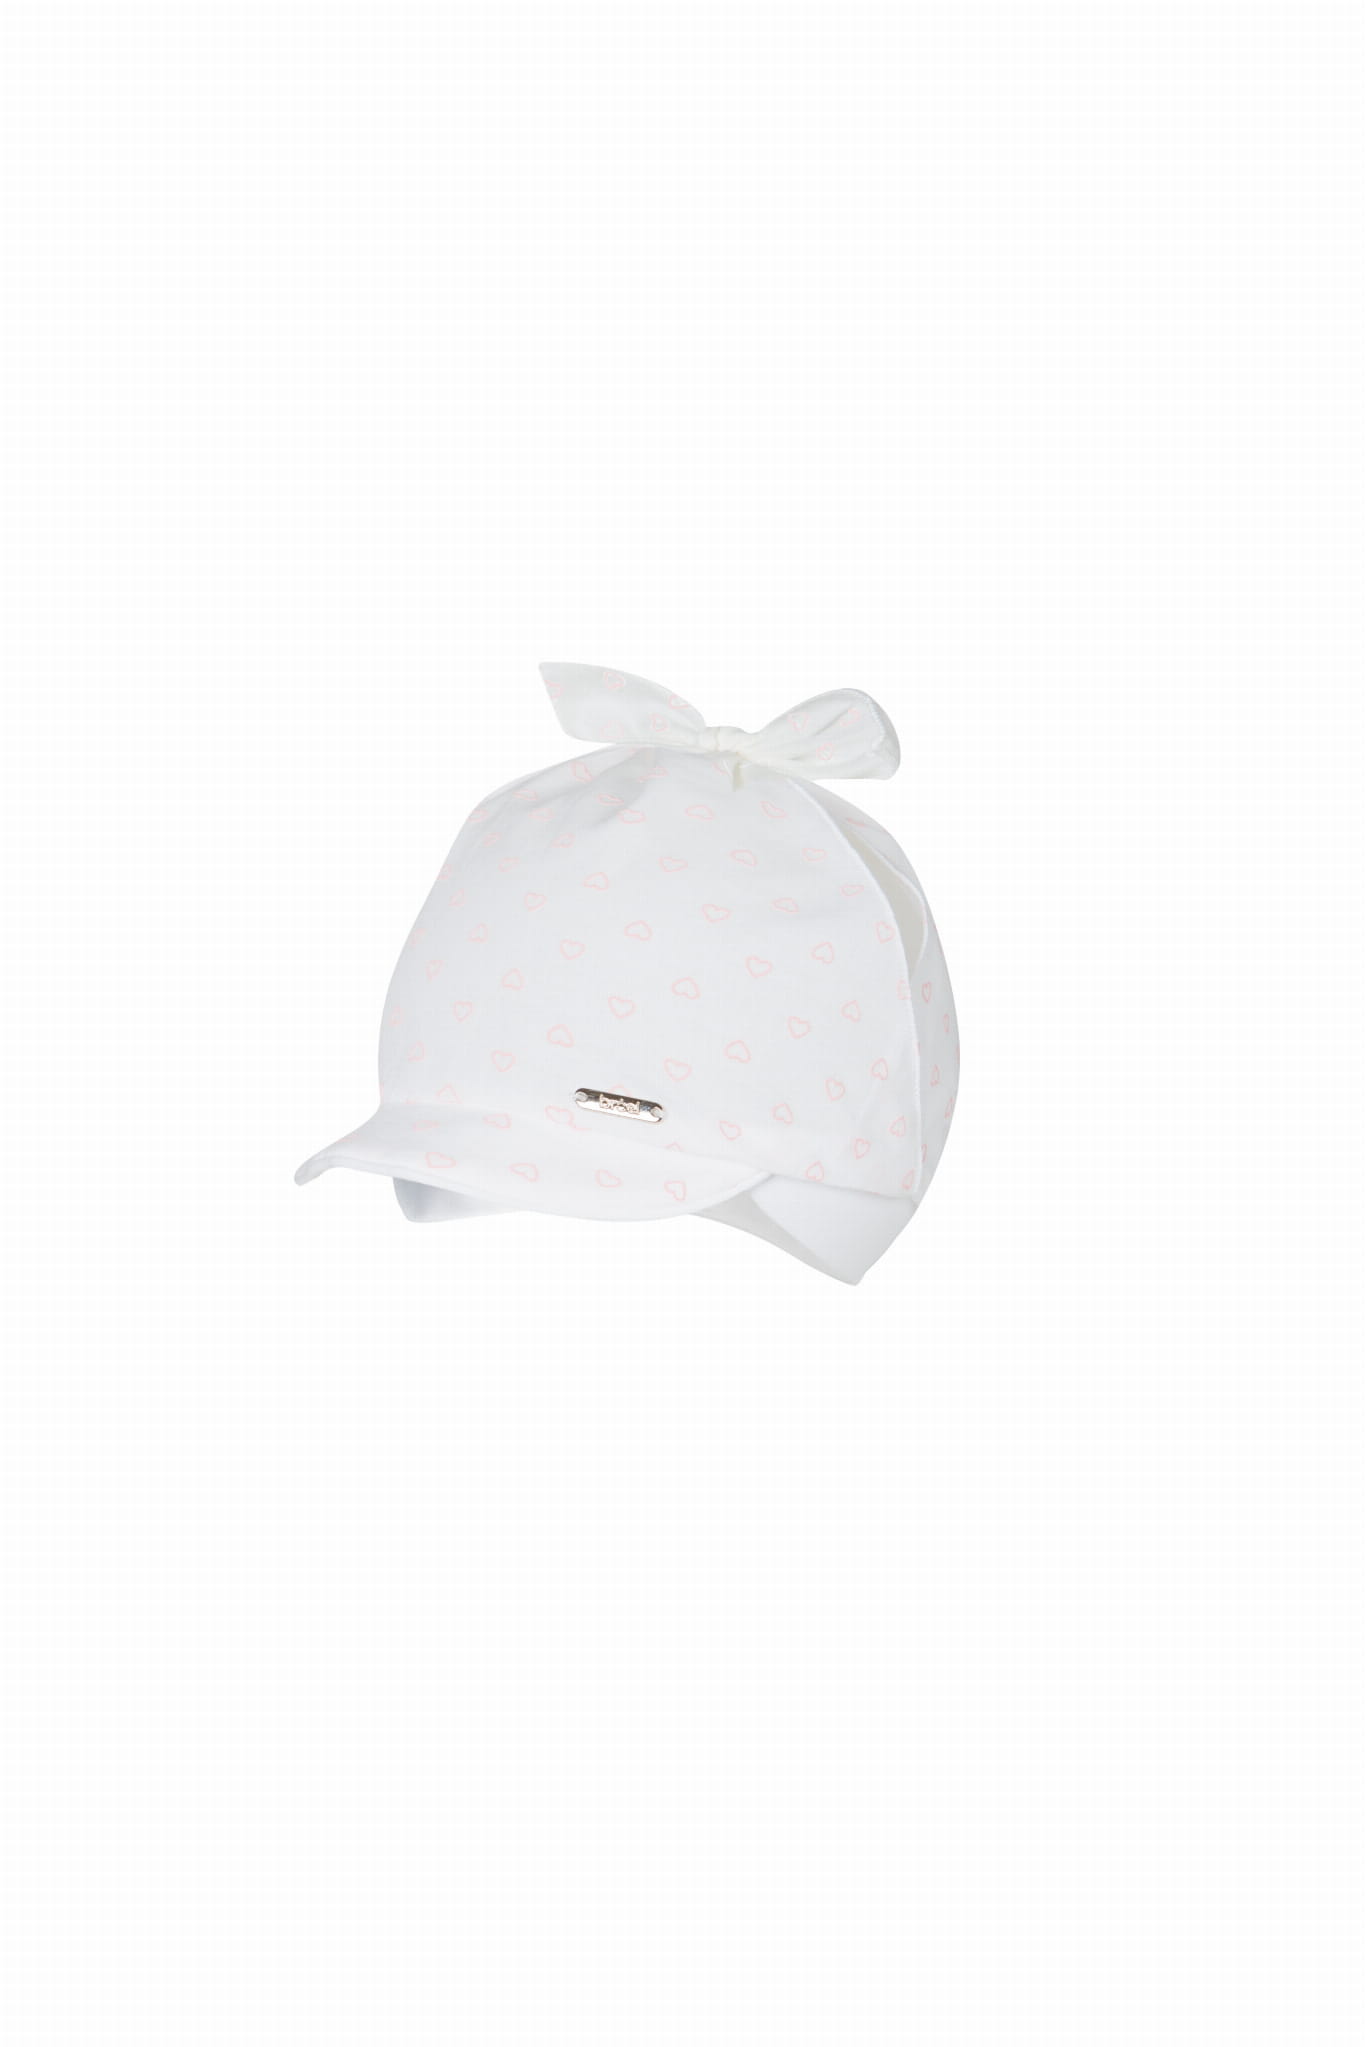 Dievčenská čiapka BROEL FLAVIA biela s ružovým srdiečkom